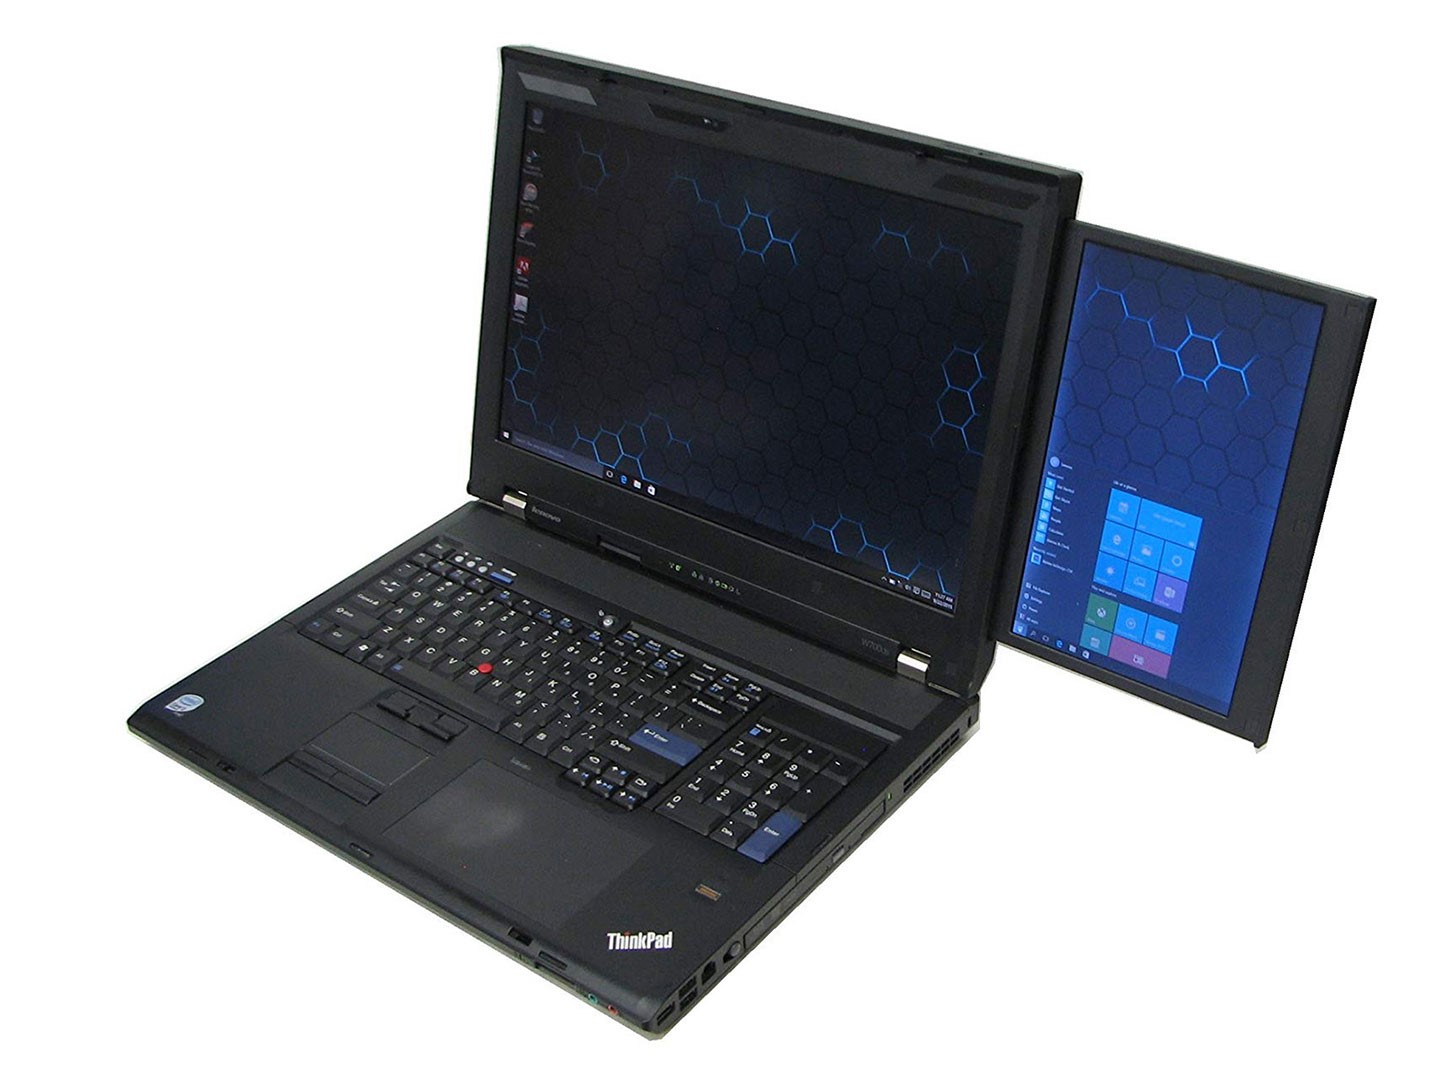 首款內建雙螢幕的 ThinkPad W700ds 工作站級電。